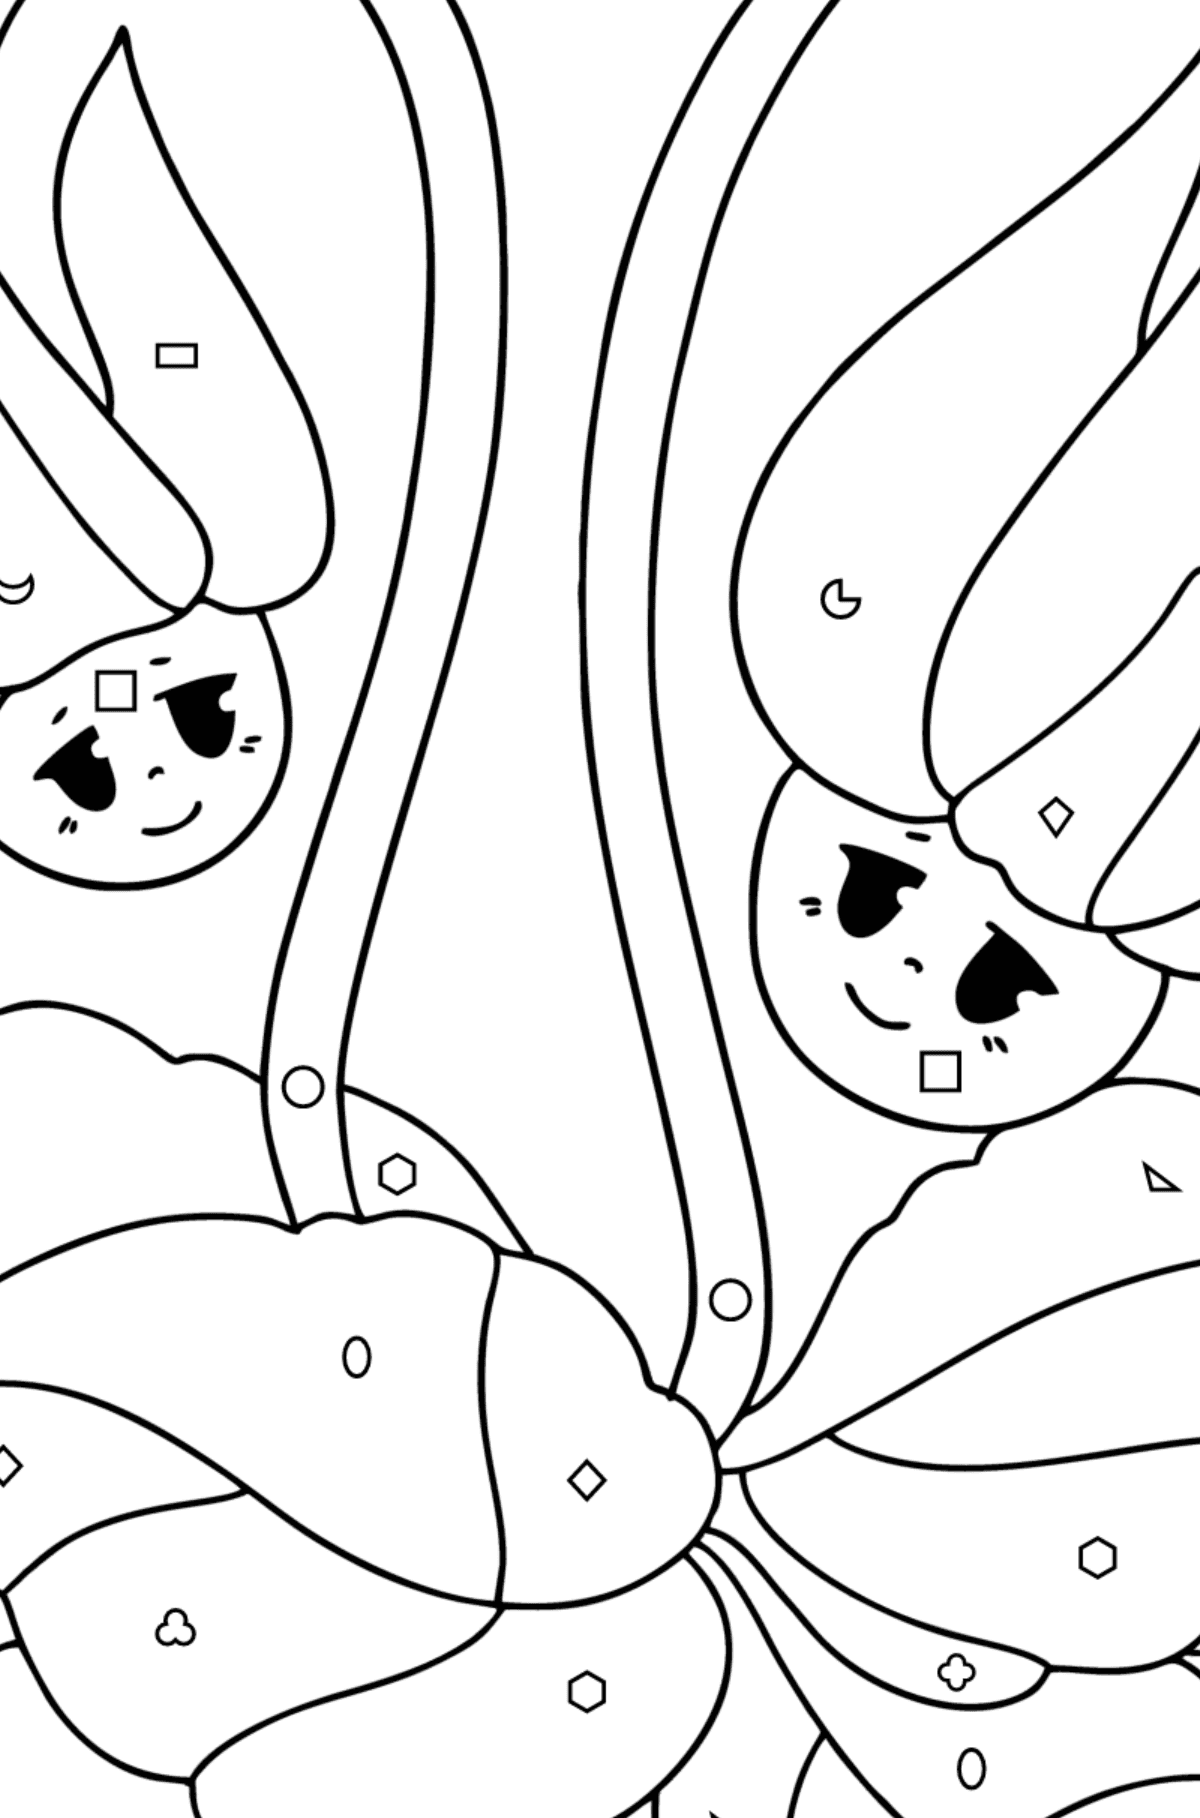 Tegning til farvning Cyclamen, blomster med øjne - Farvelægning af geometriske figurer for børn